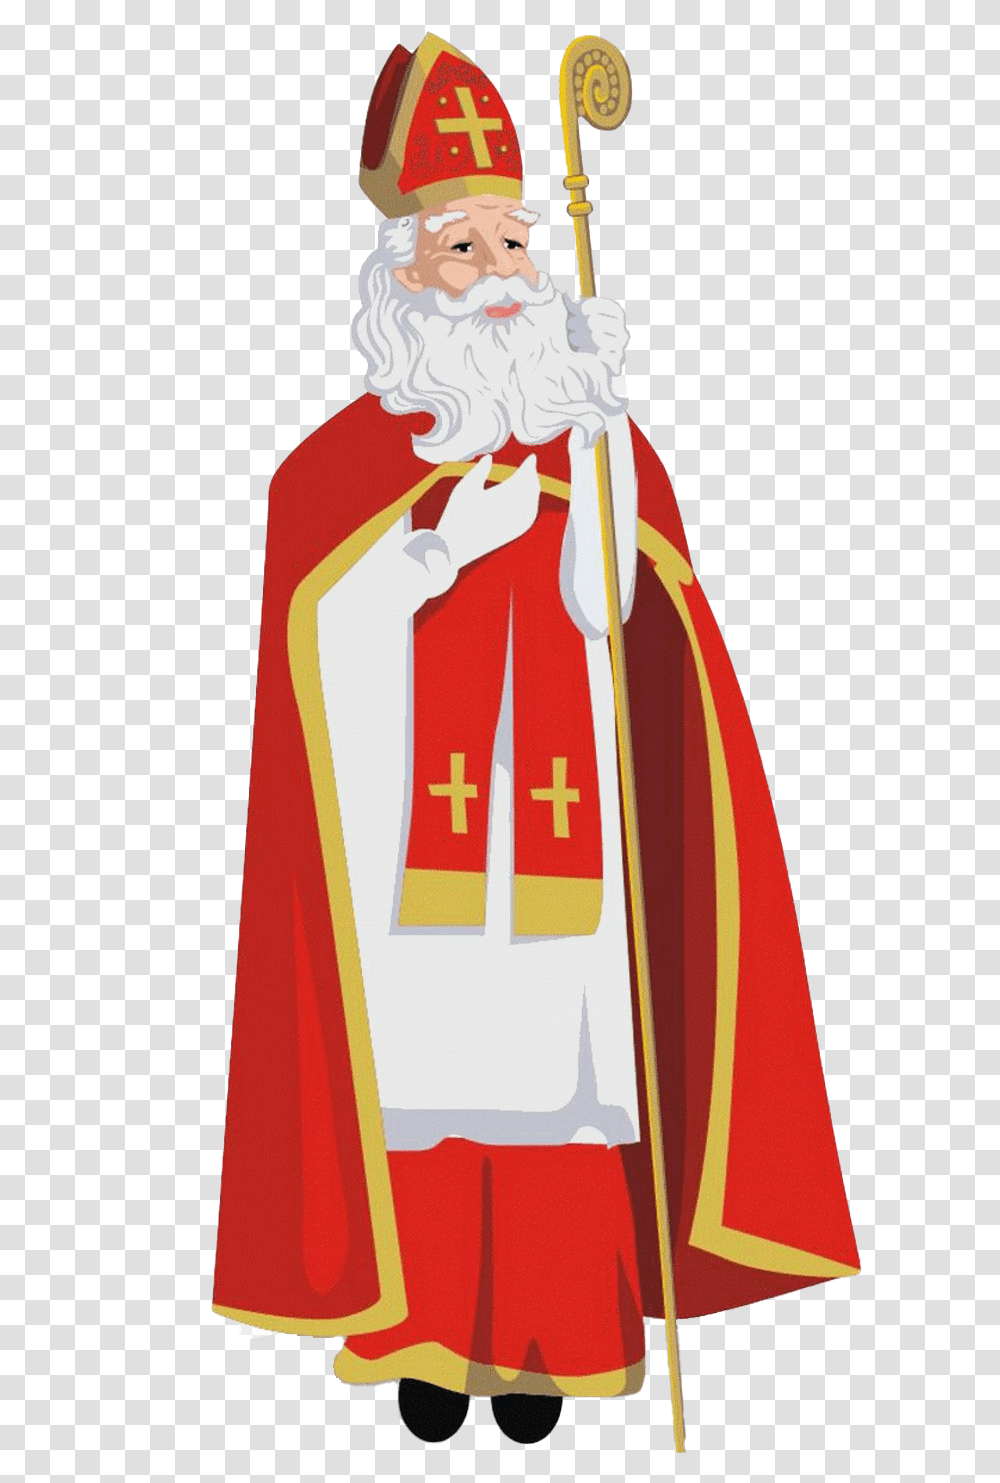 Saint Nicholas Pic St Nicholas Day Clipart, Apparel, Cloak, Fashion Transparent Png